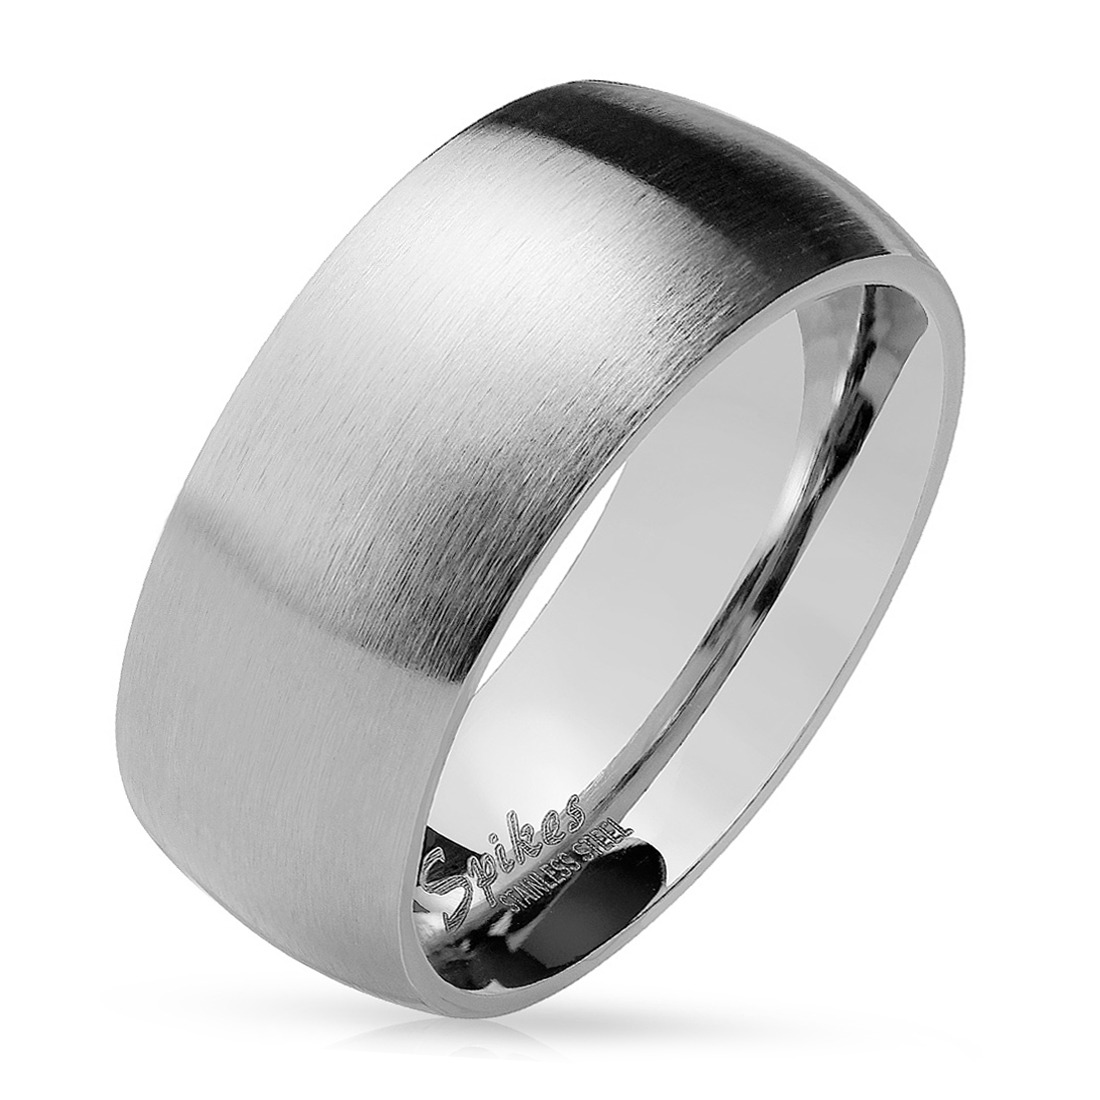 Šperky4U OPR0028 Ocelový prsten matný, šíře 8 mm - velikost 75 - OPR0028-8-75